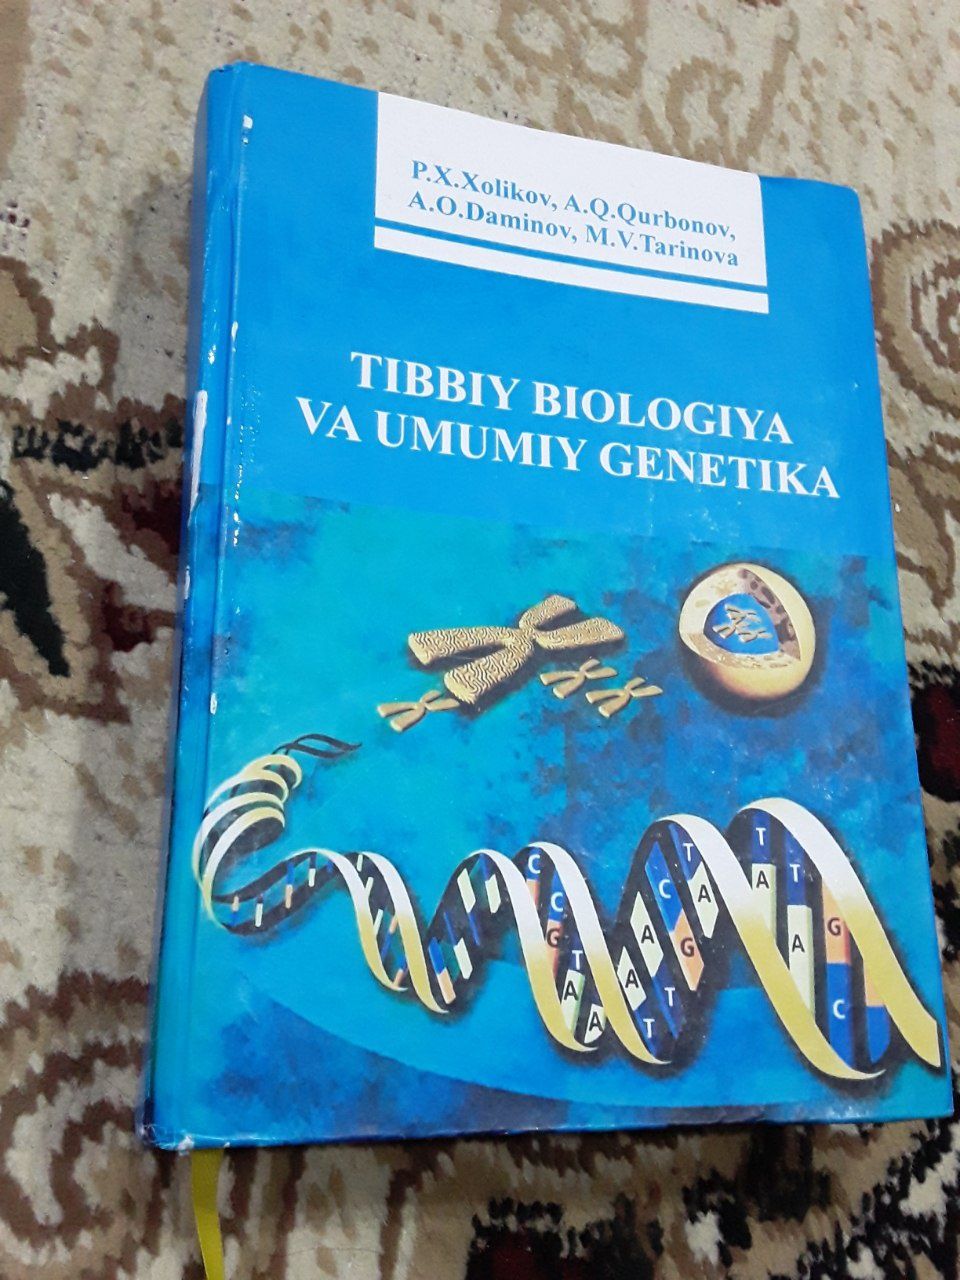 Tibbiy biologiya va umumiy genetika